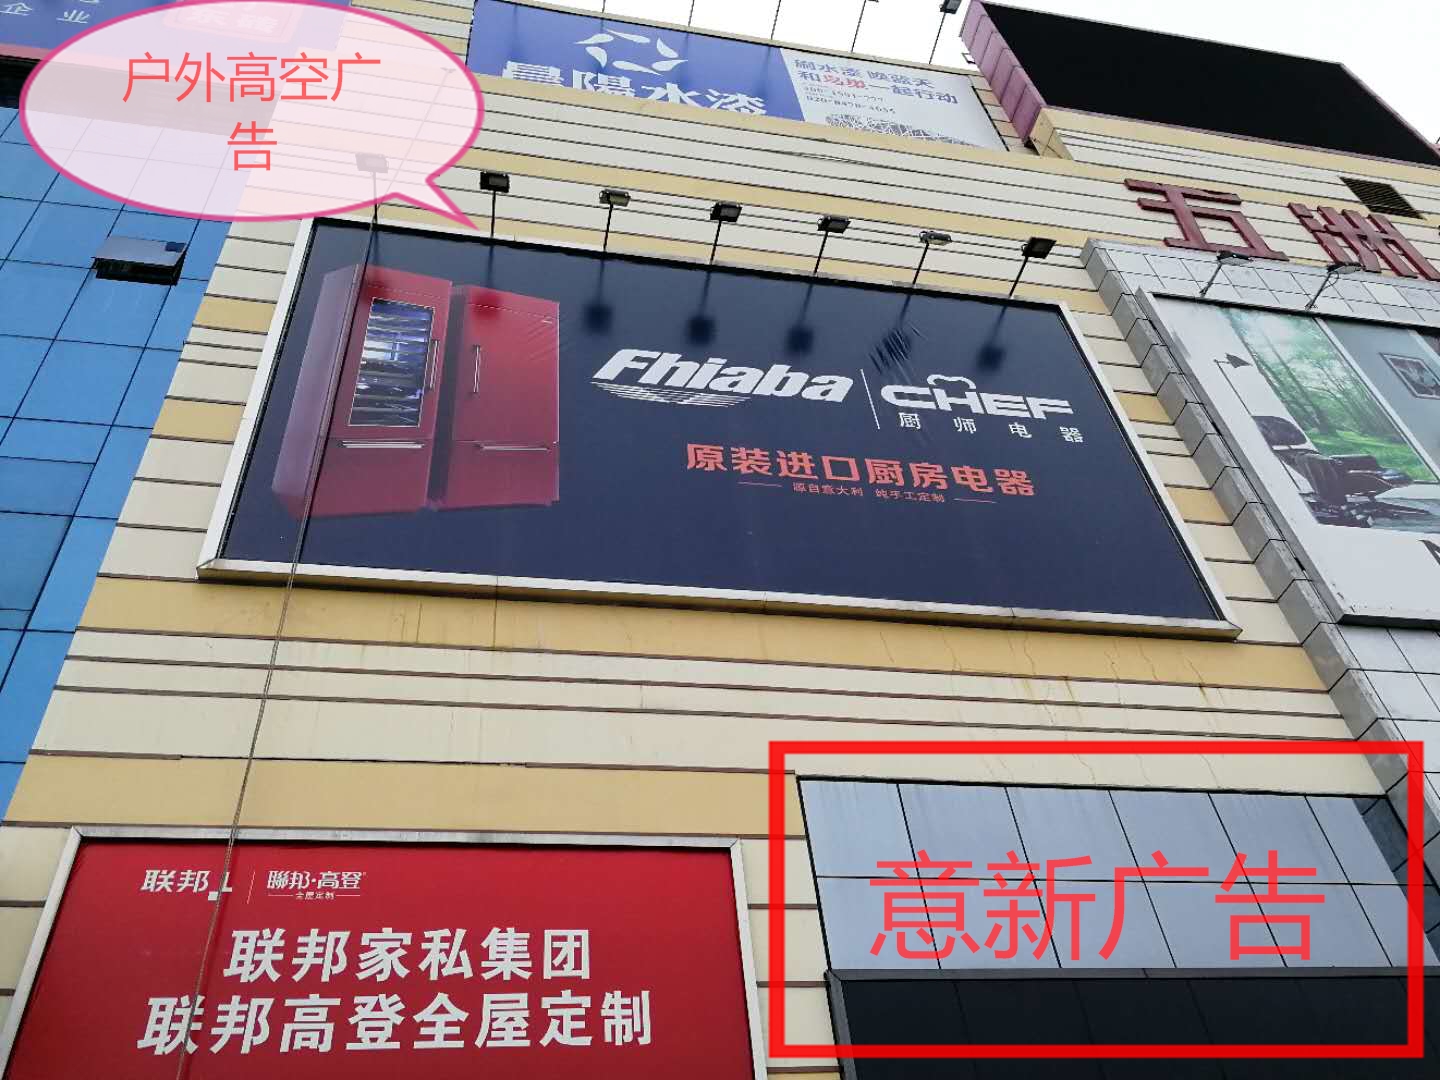 广州喷绘制作 户外广告 围墙画 背景形象墙 亚克力 水晶字 led灯箱